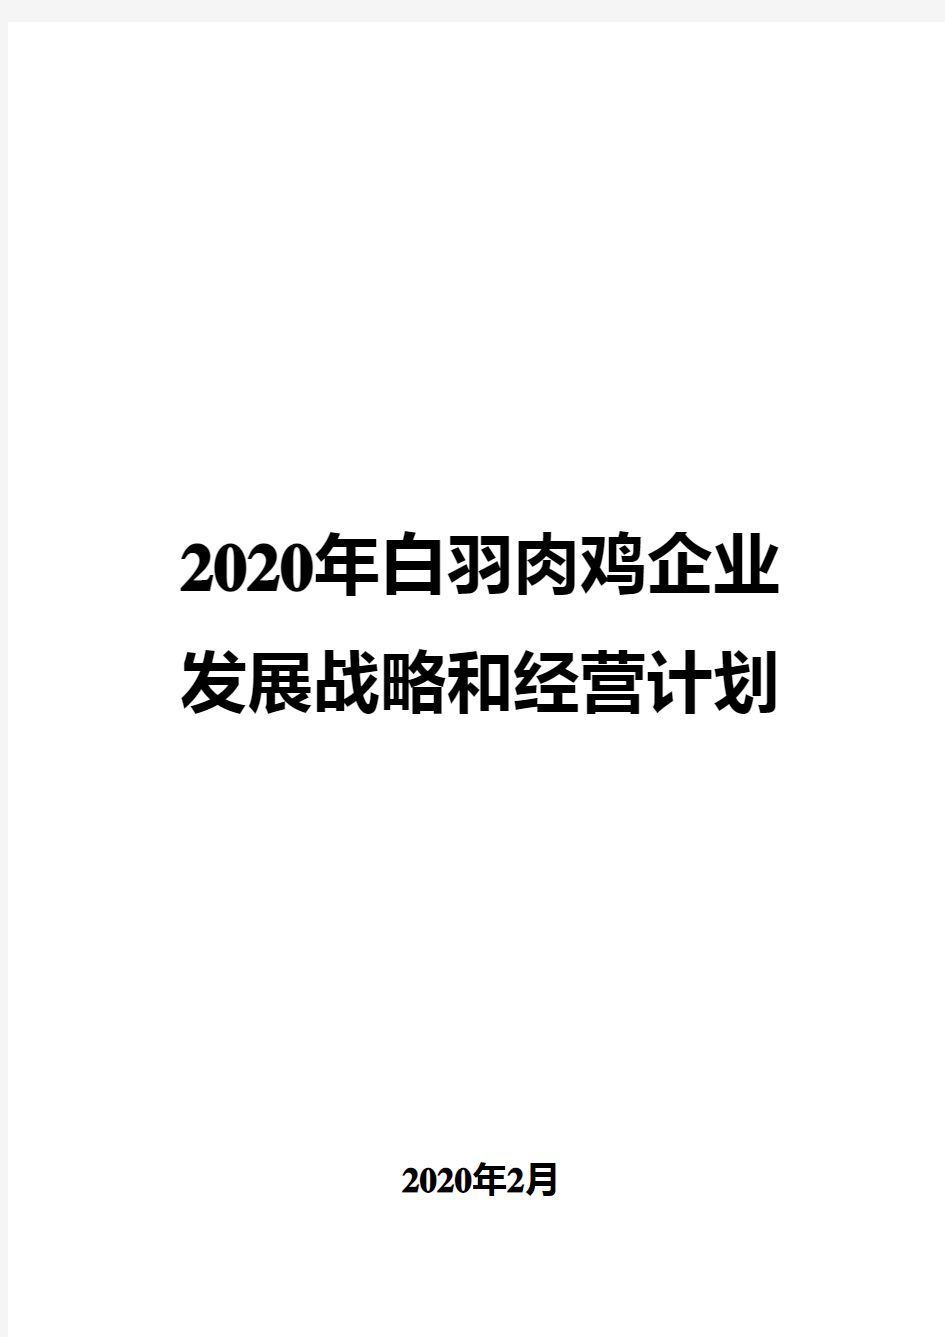 2020年白羽肉鸡企业发展战略和经营计划